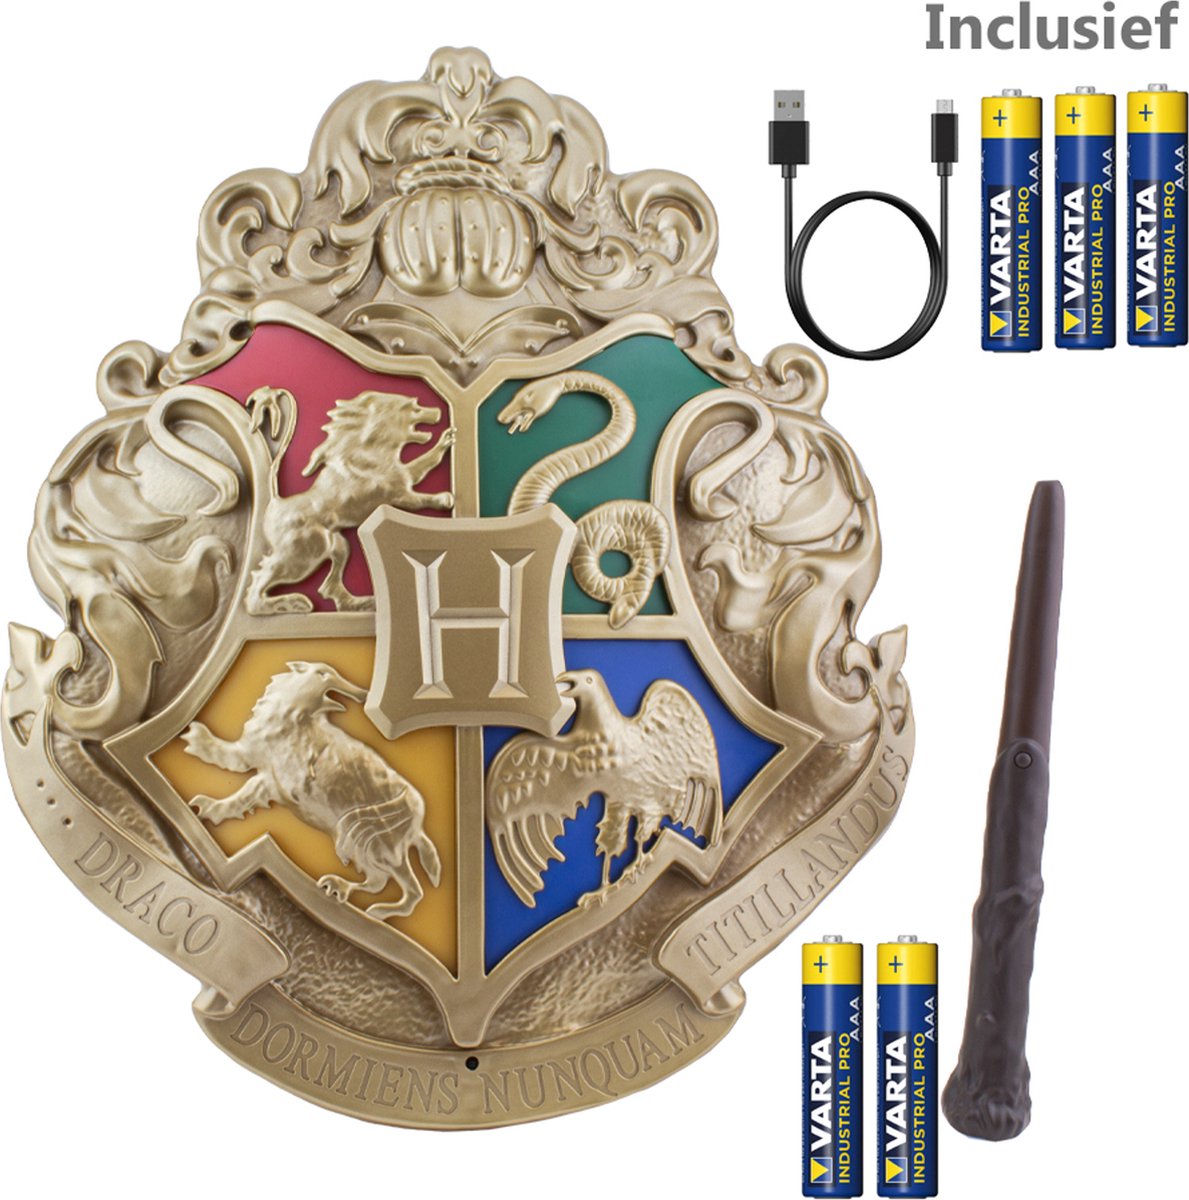 Harry Poter - Hogwarts Crest Wandlamp met afstandsbediening Incl. 5 aaa Batterijen + USB Kabel